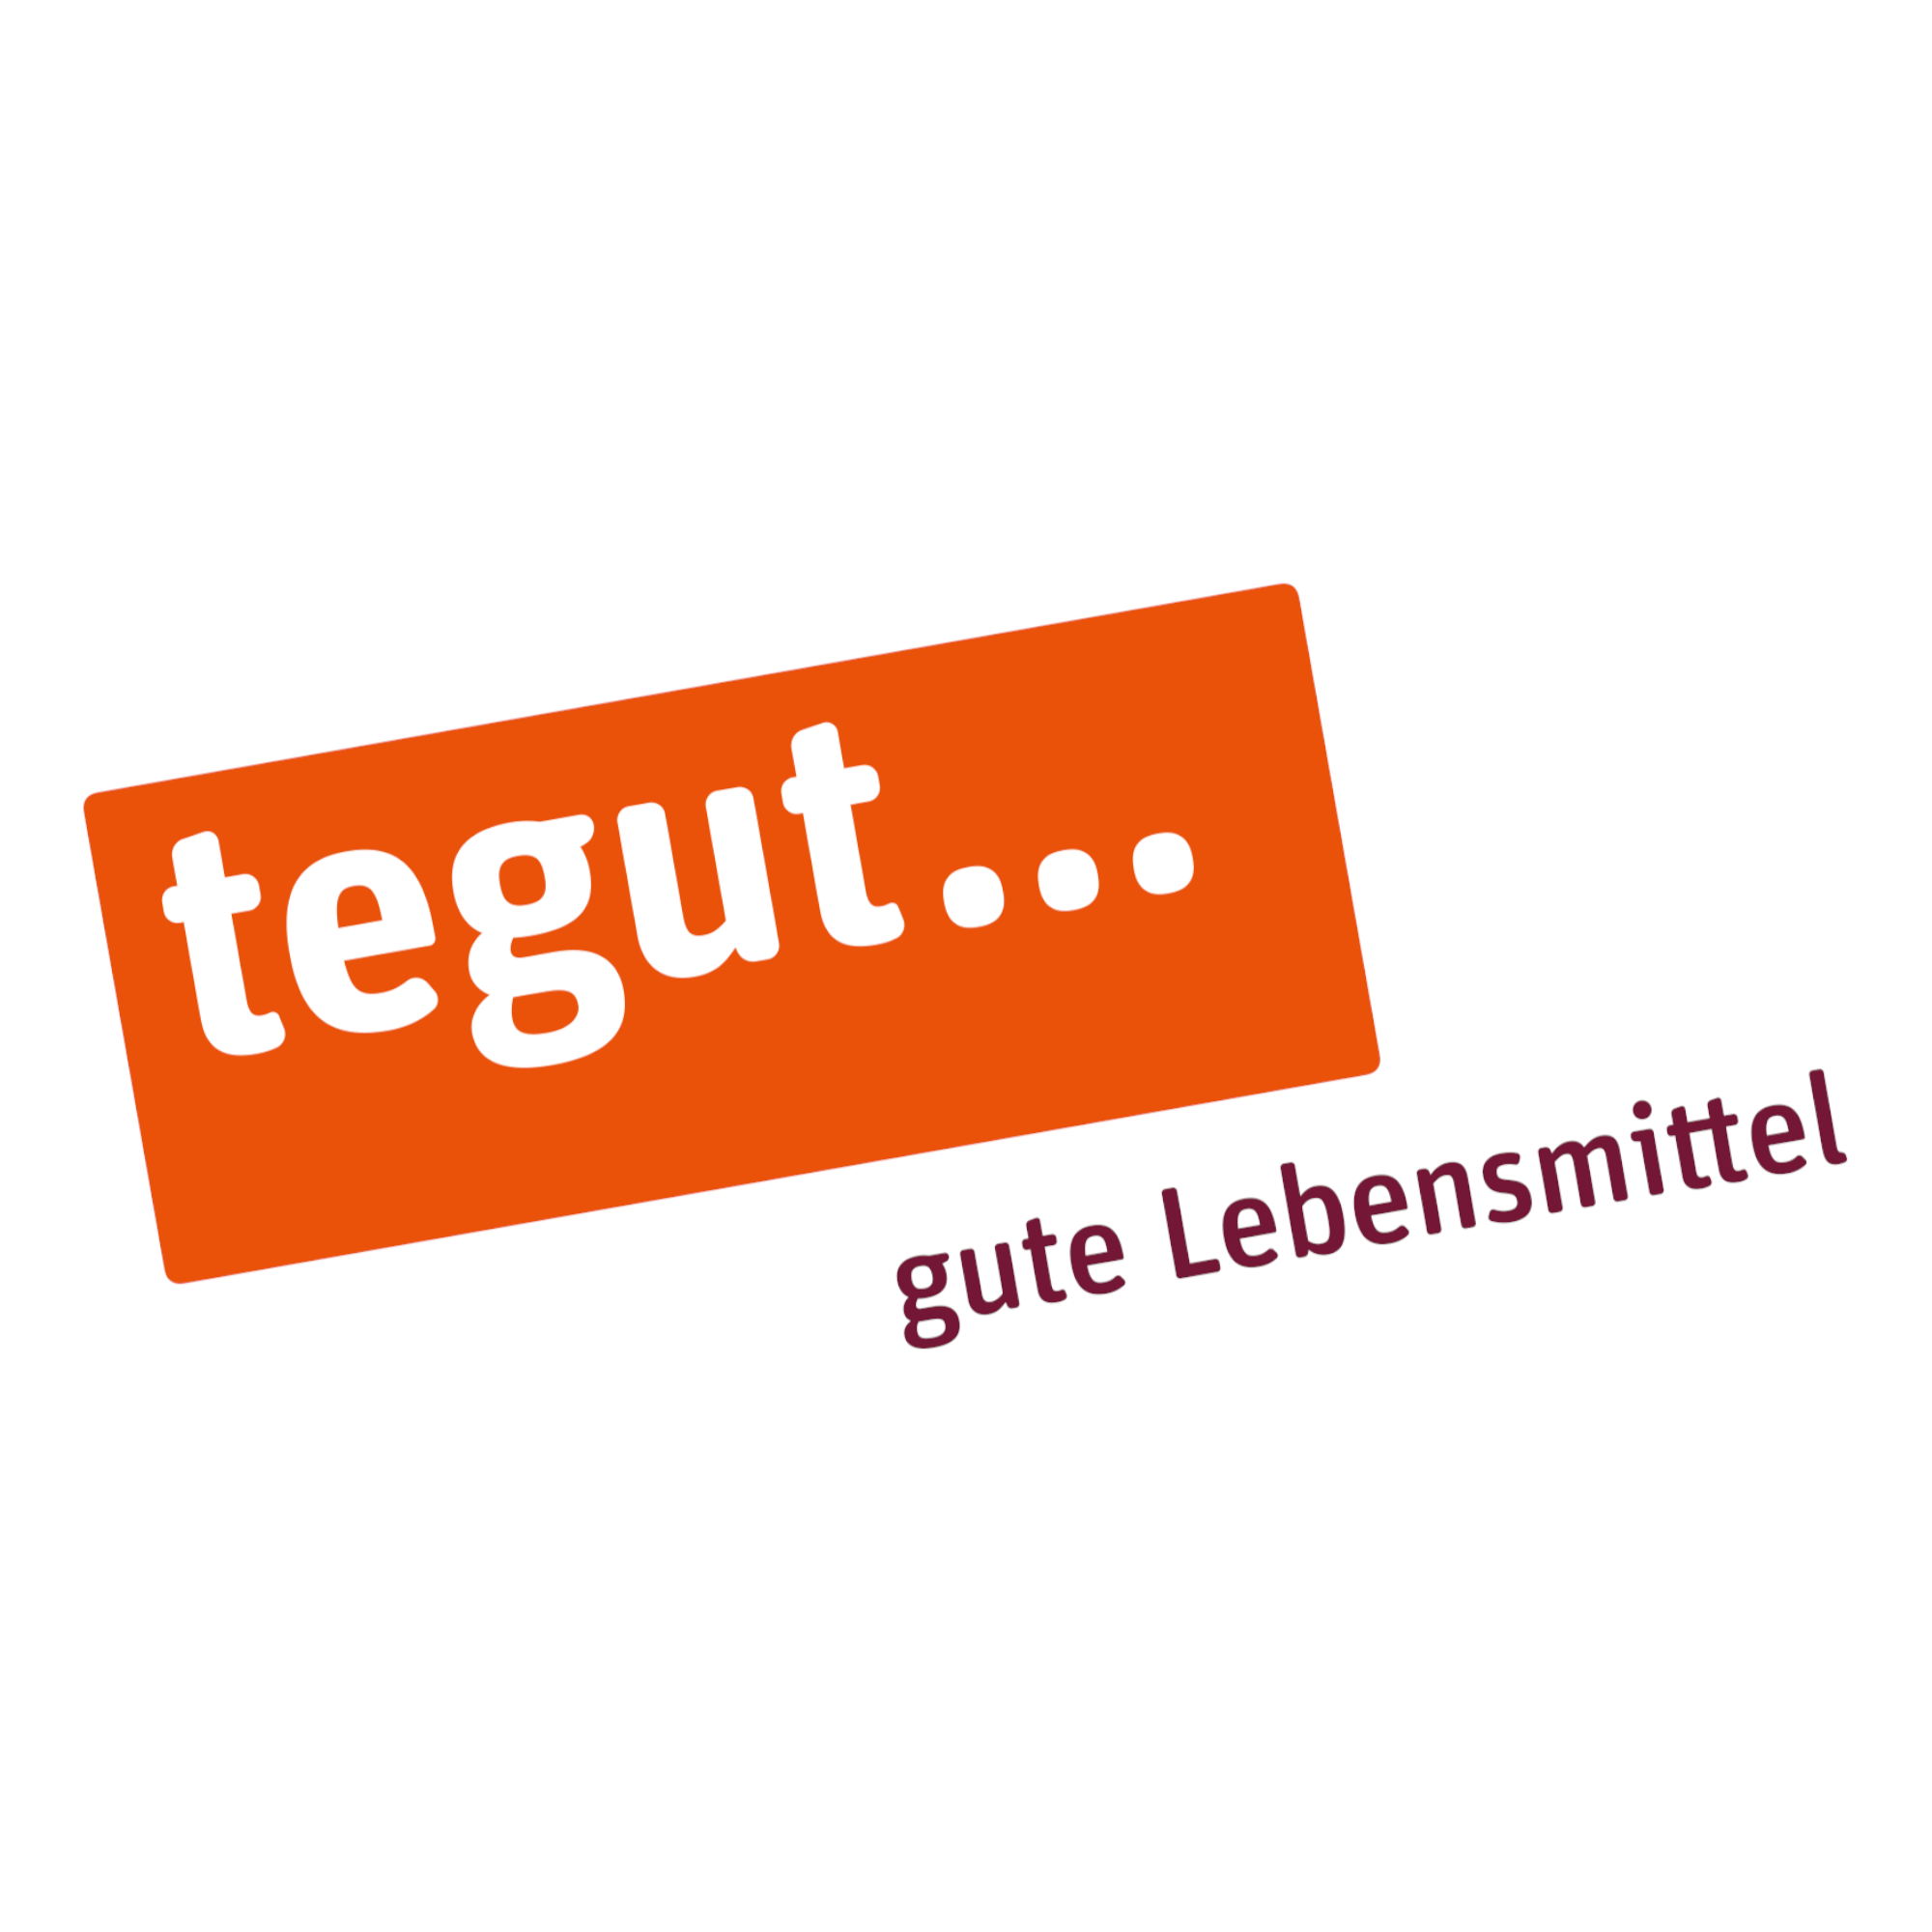 tegut... gute Lebensmittel in Eppstein - Logo